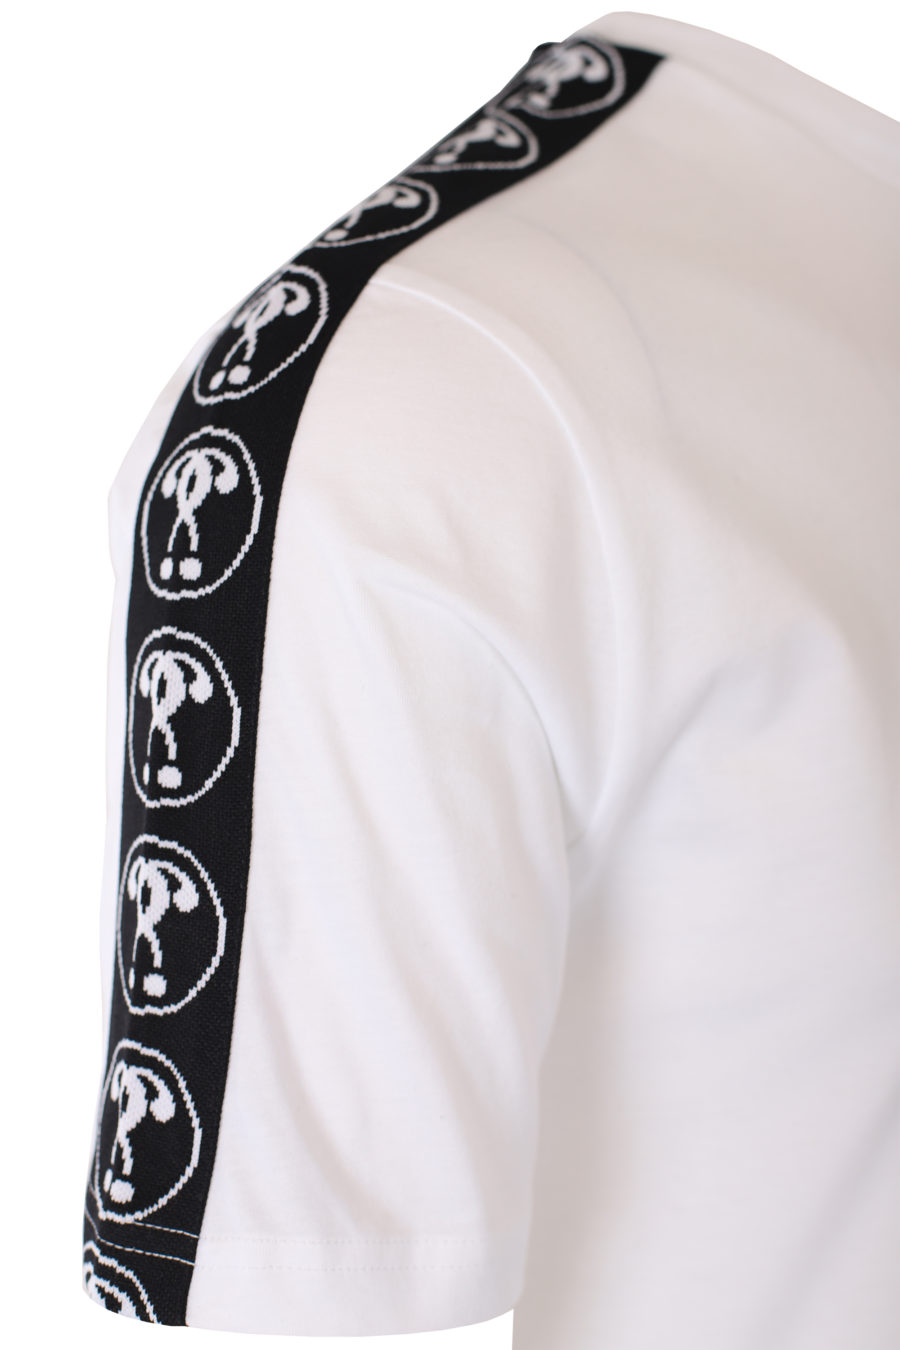 T-shirt blanc avec petit logo à double question et ruban adhésif sur les manches - IMG 9332